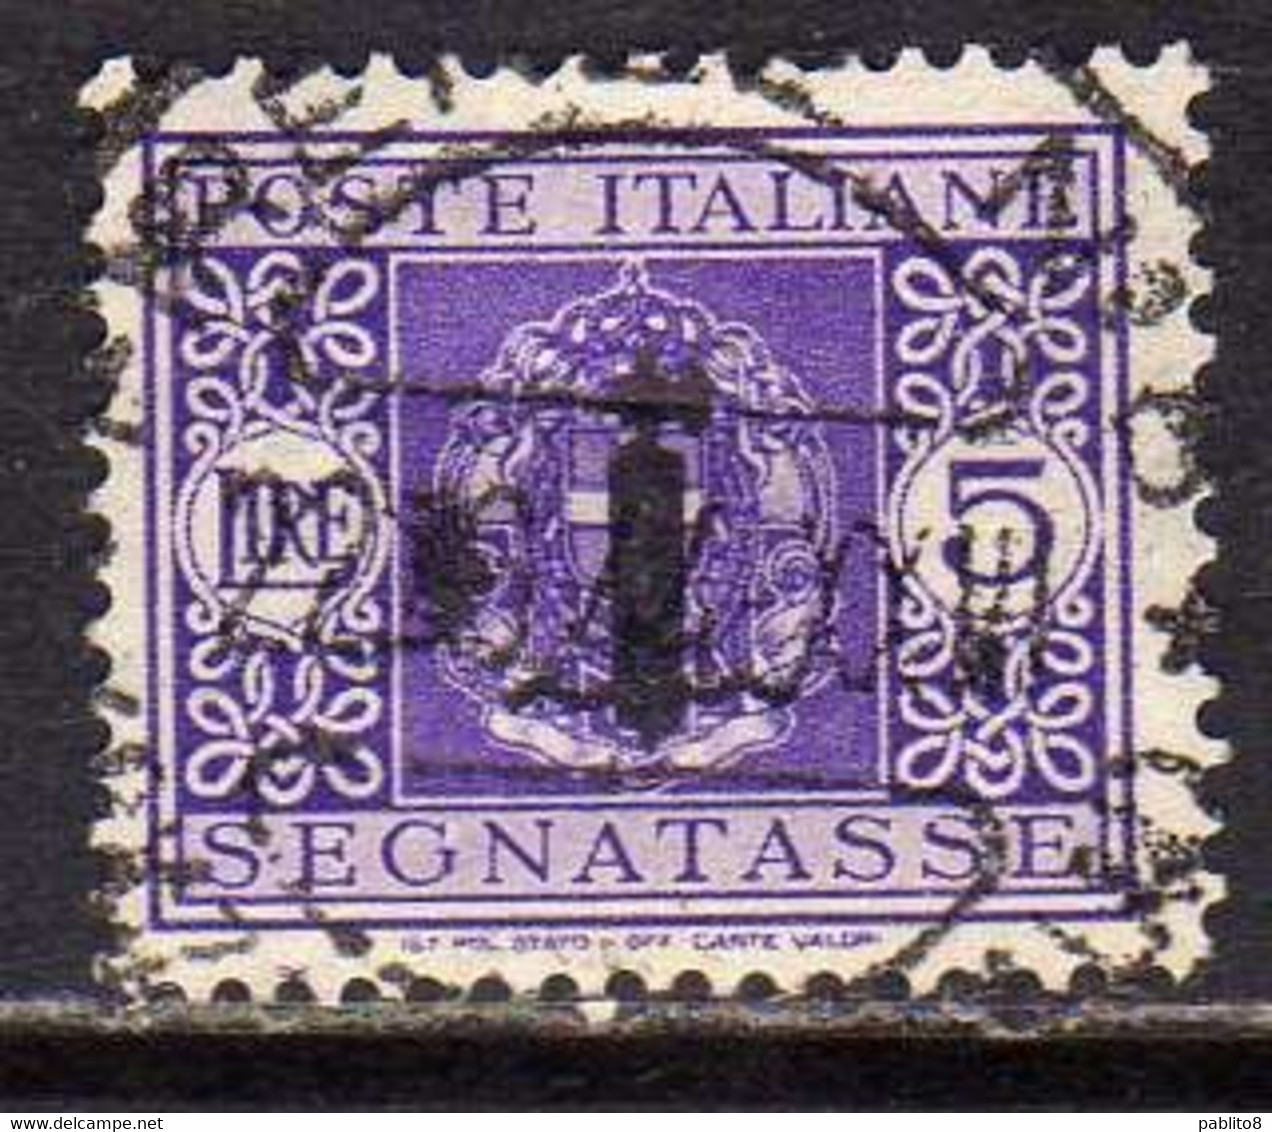 ITALIA REGNO ITALY KINGDOM 1944 REPUBBLICA SOCIALE ITALIANA RSI TASSE POSTAGE DUE TAXES SEGNATASSE FASCIO LIRE 5 USATO - Segnatasse